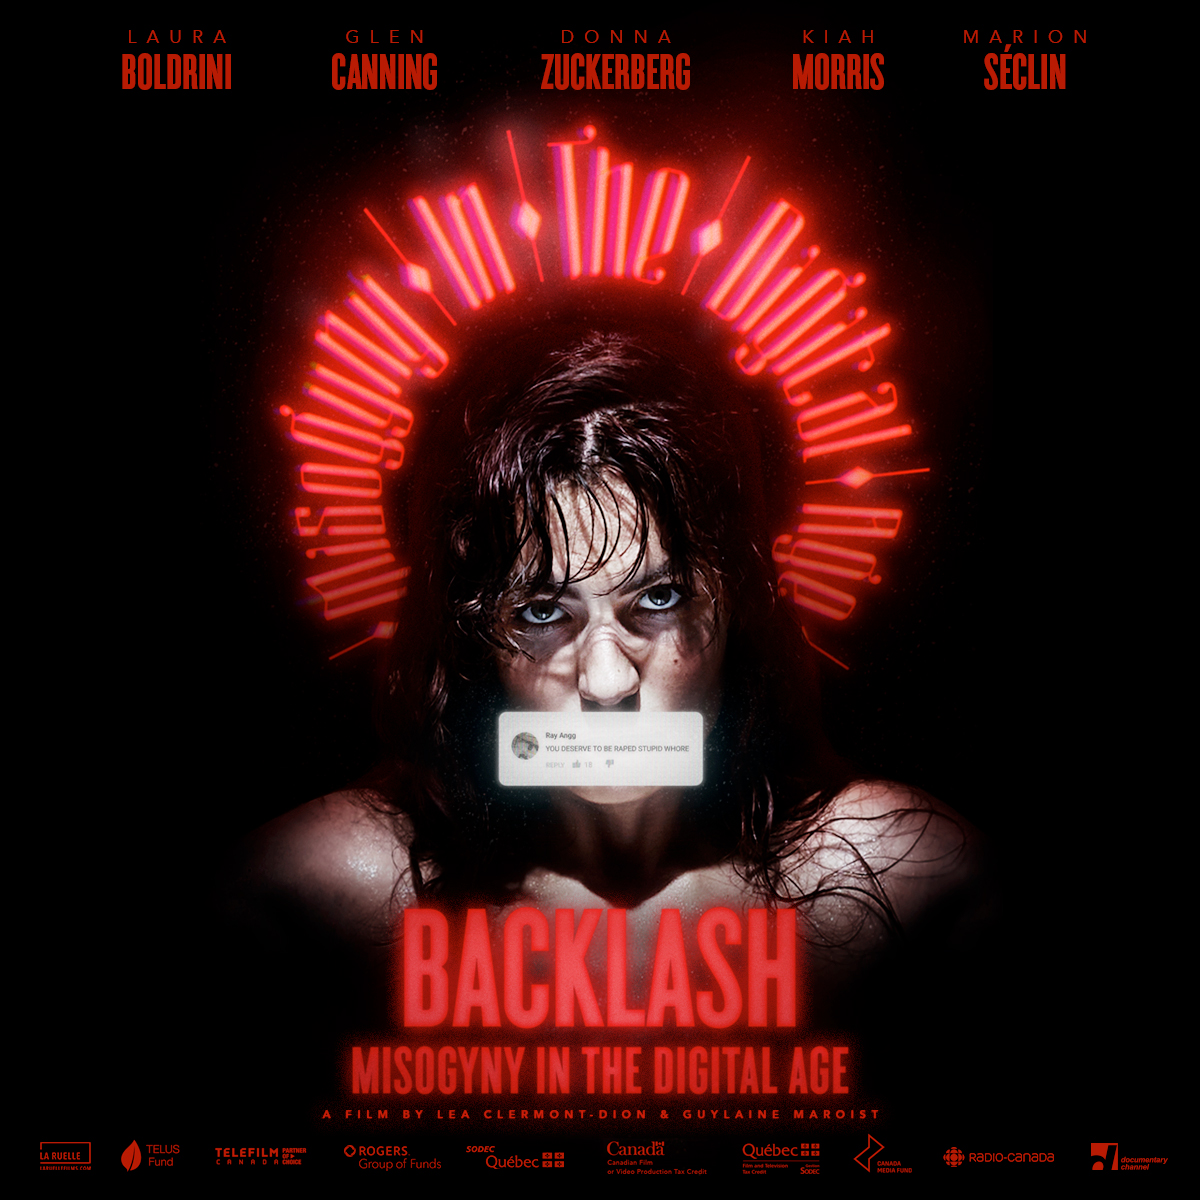 International Women's Day: "Backlash: Misogyny in the Digital Age" Film Screening